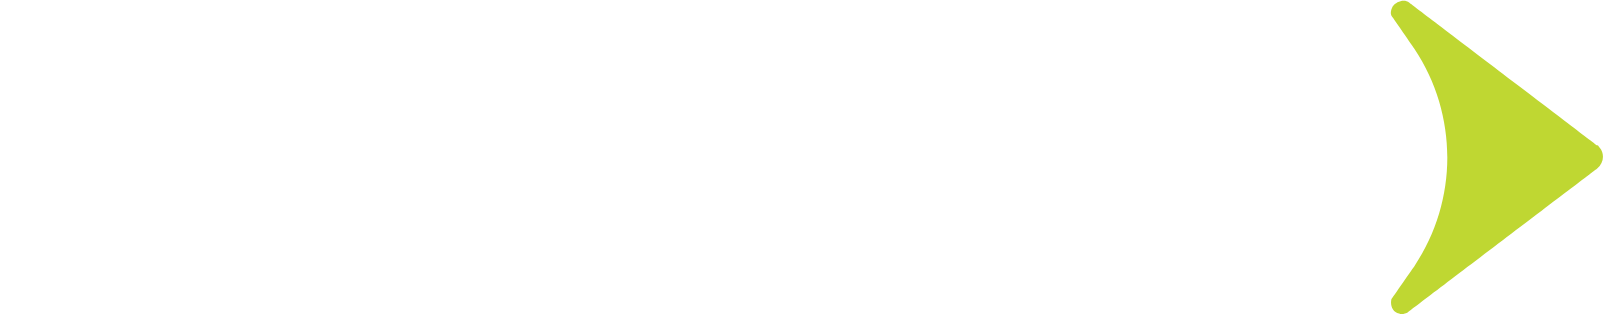 Globant logo grand pour les fonds sombres (PNG transparent)